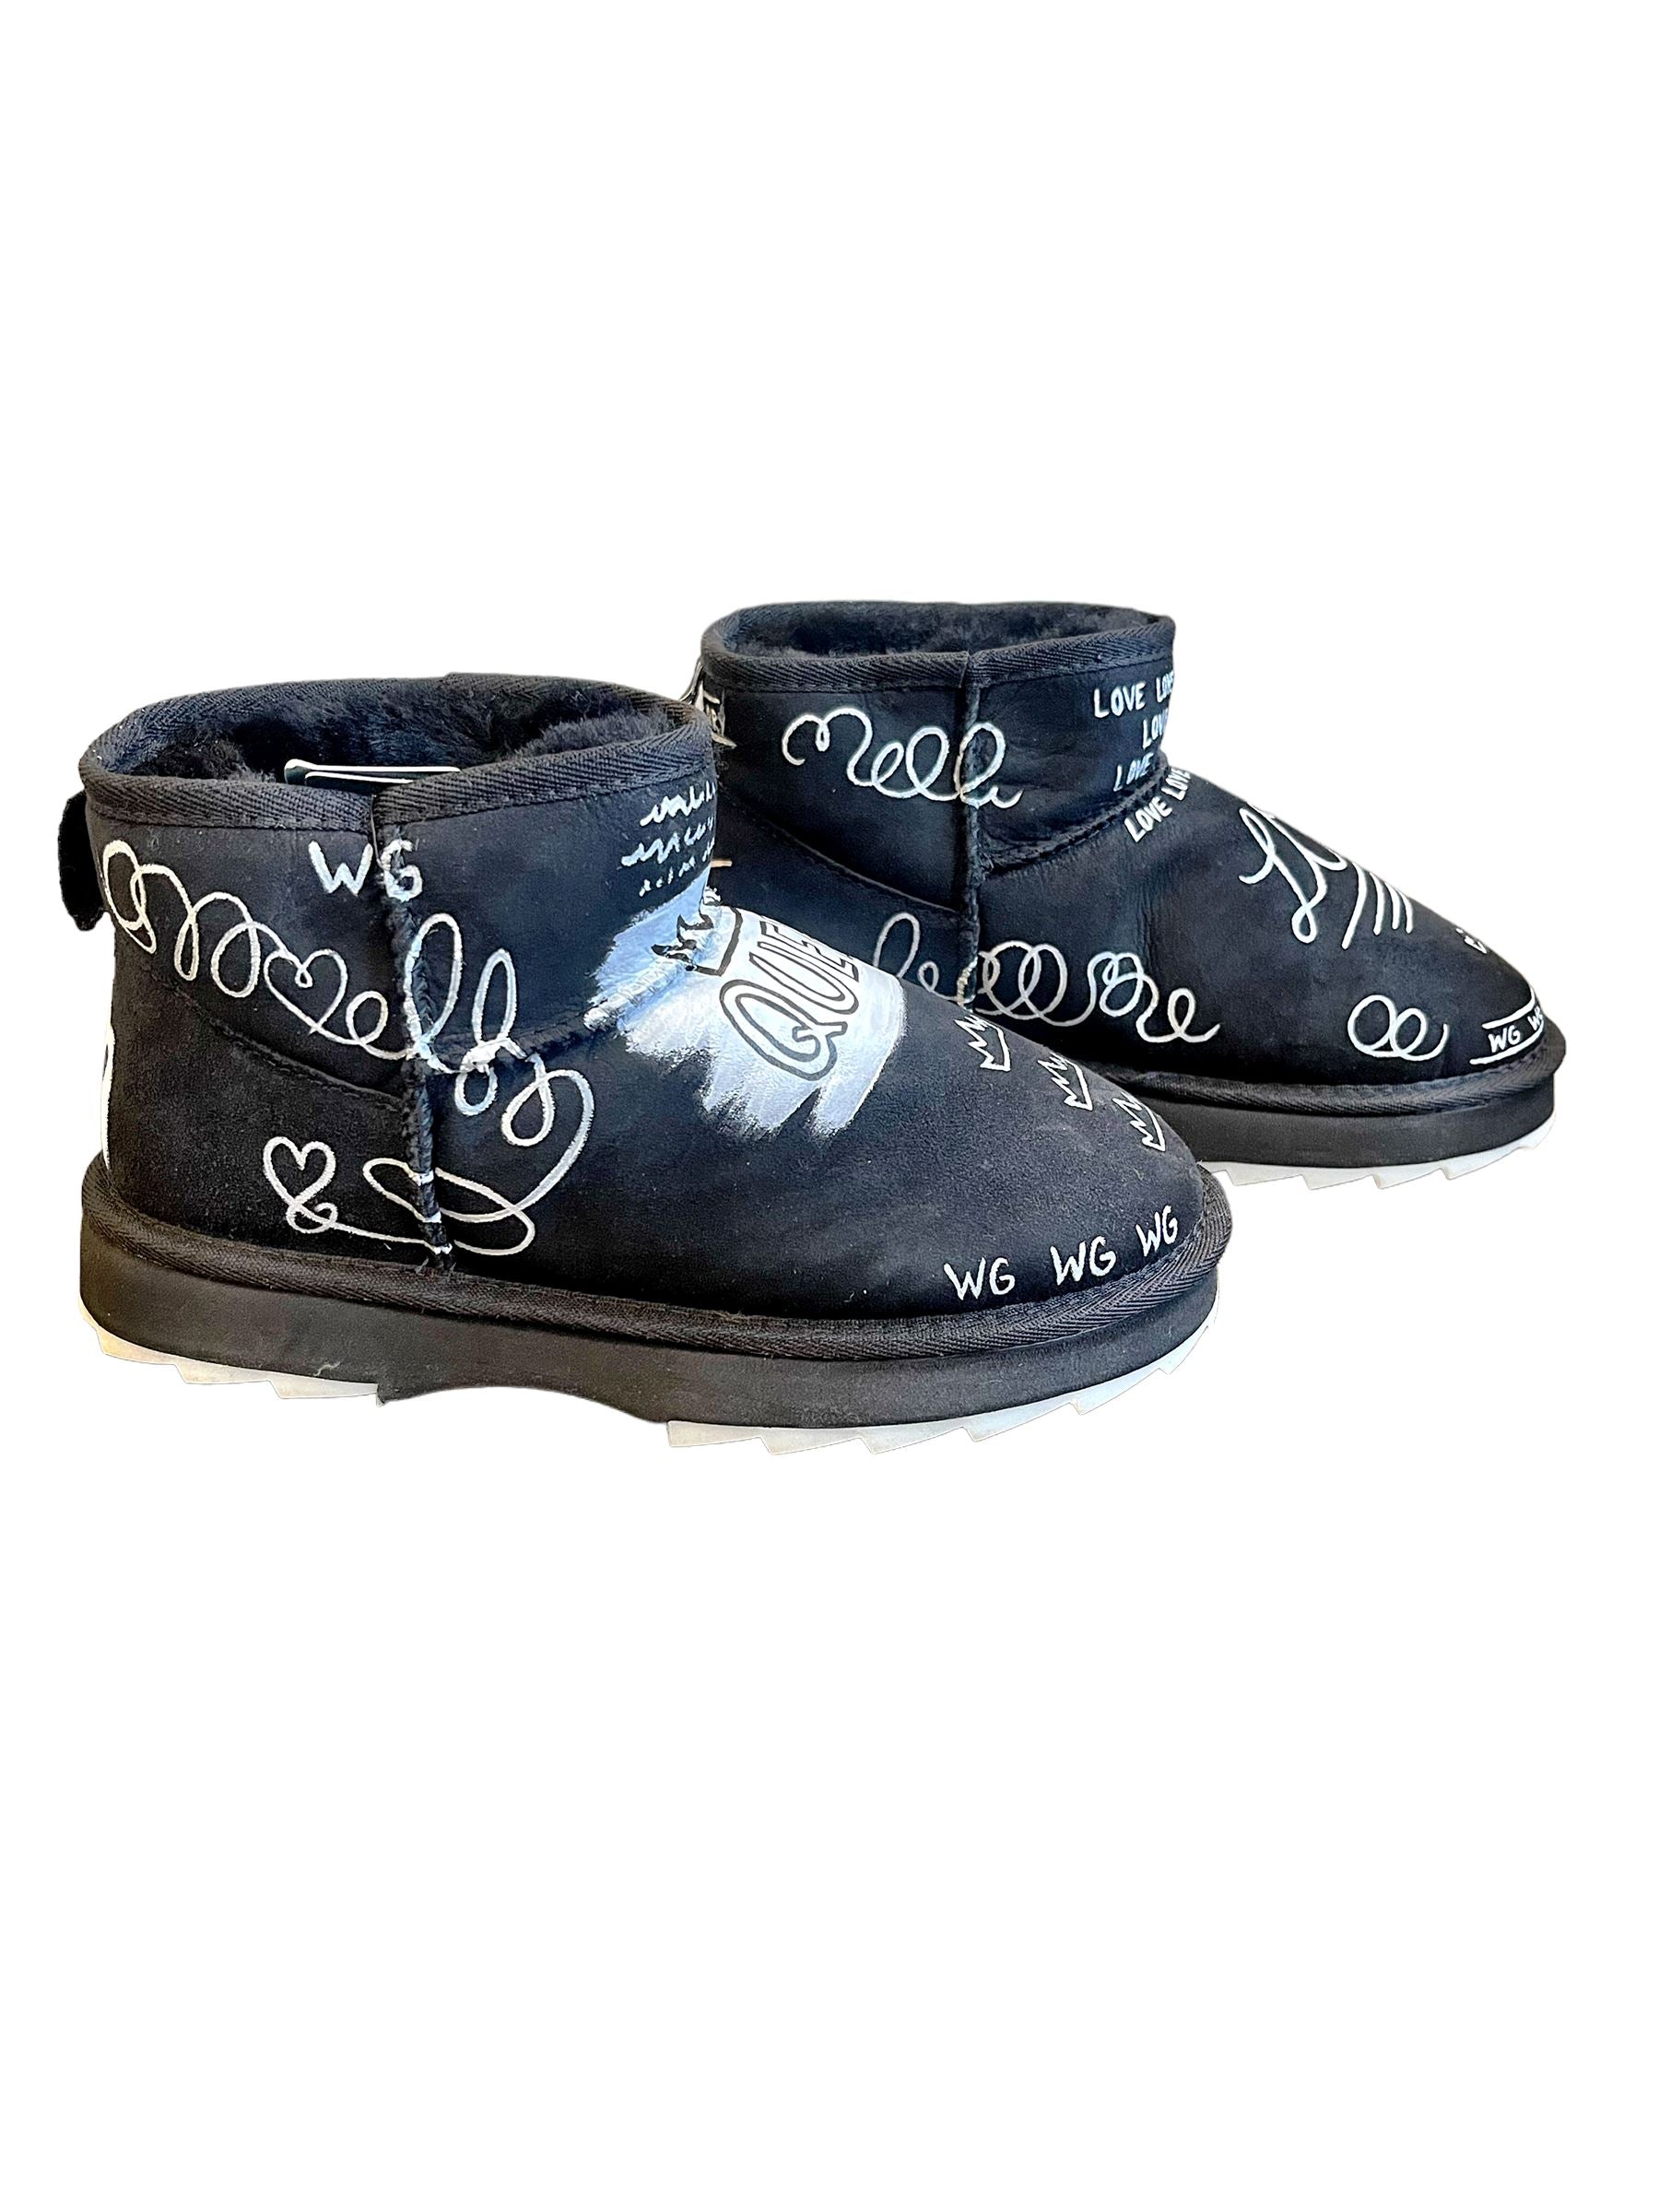 Graffiti Love' Painted Emu Boots